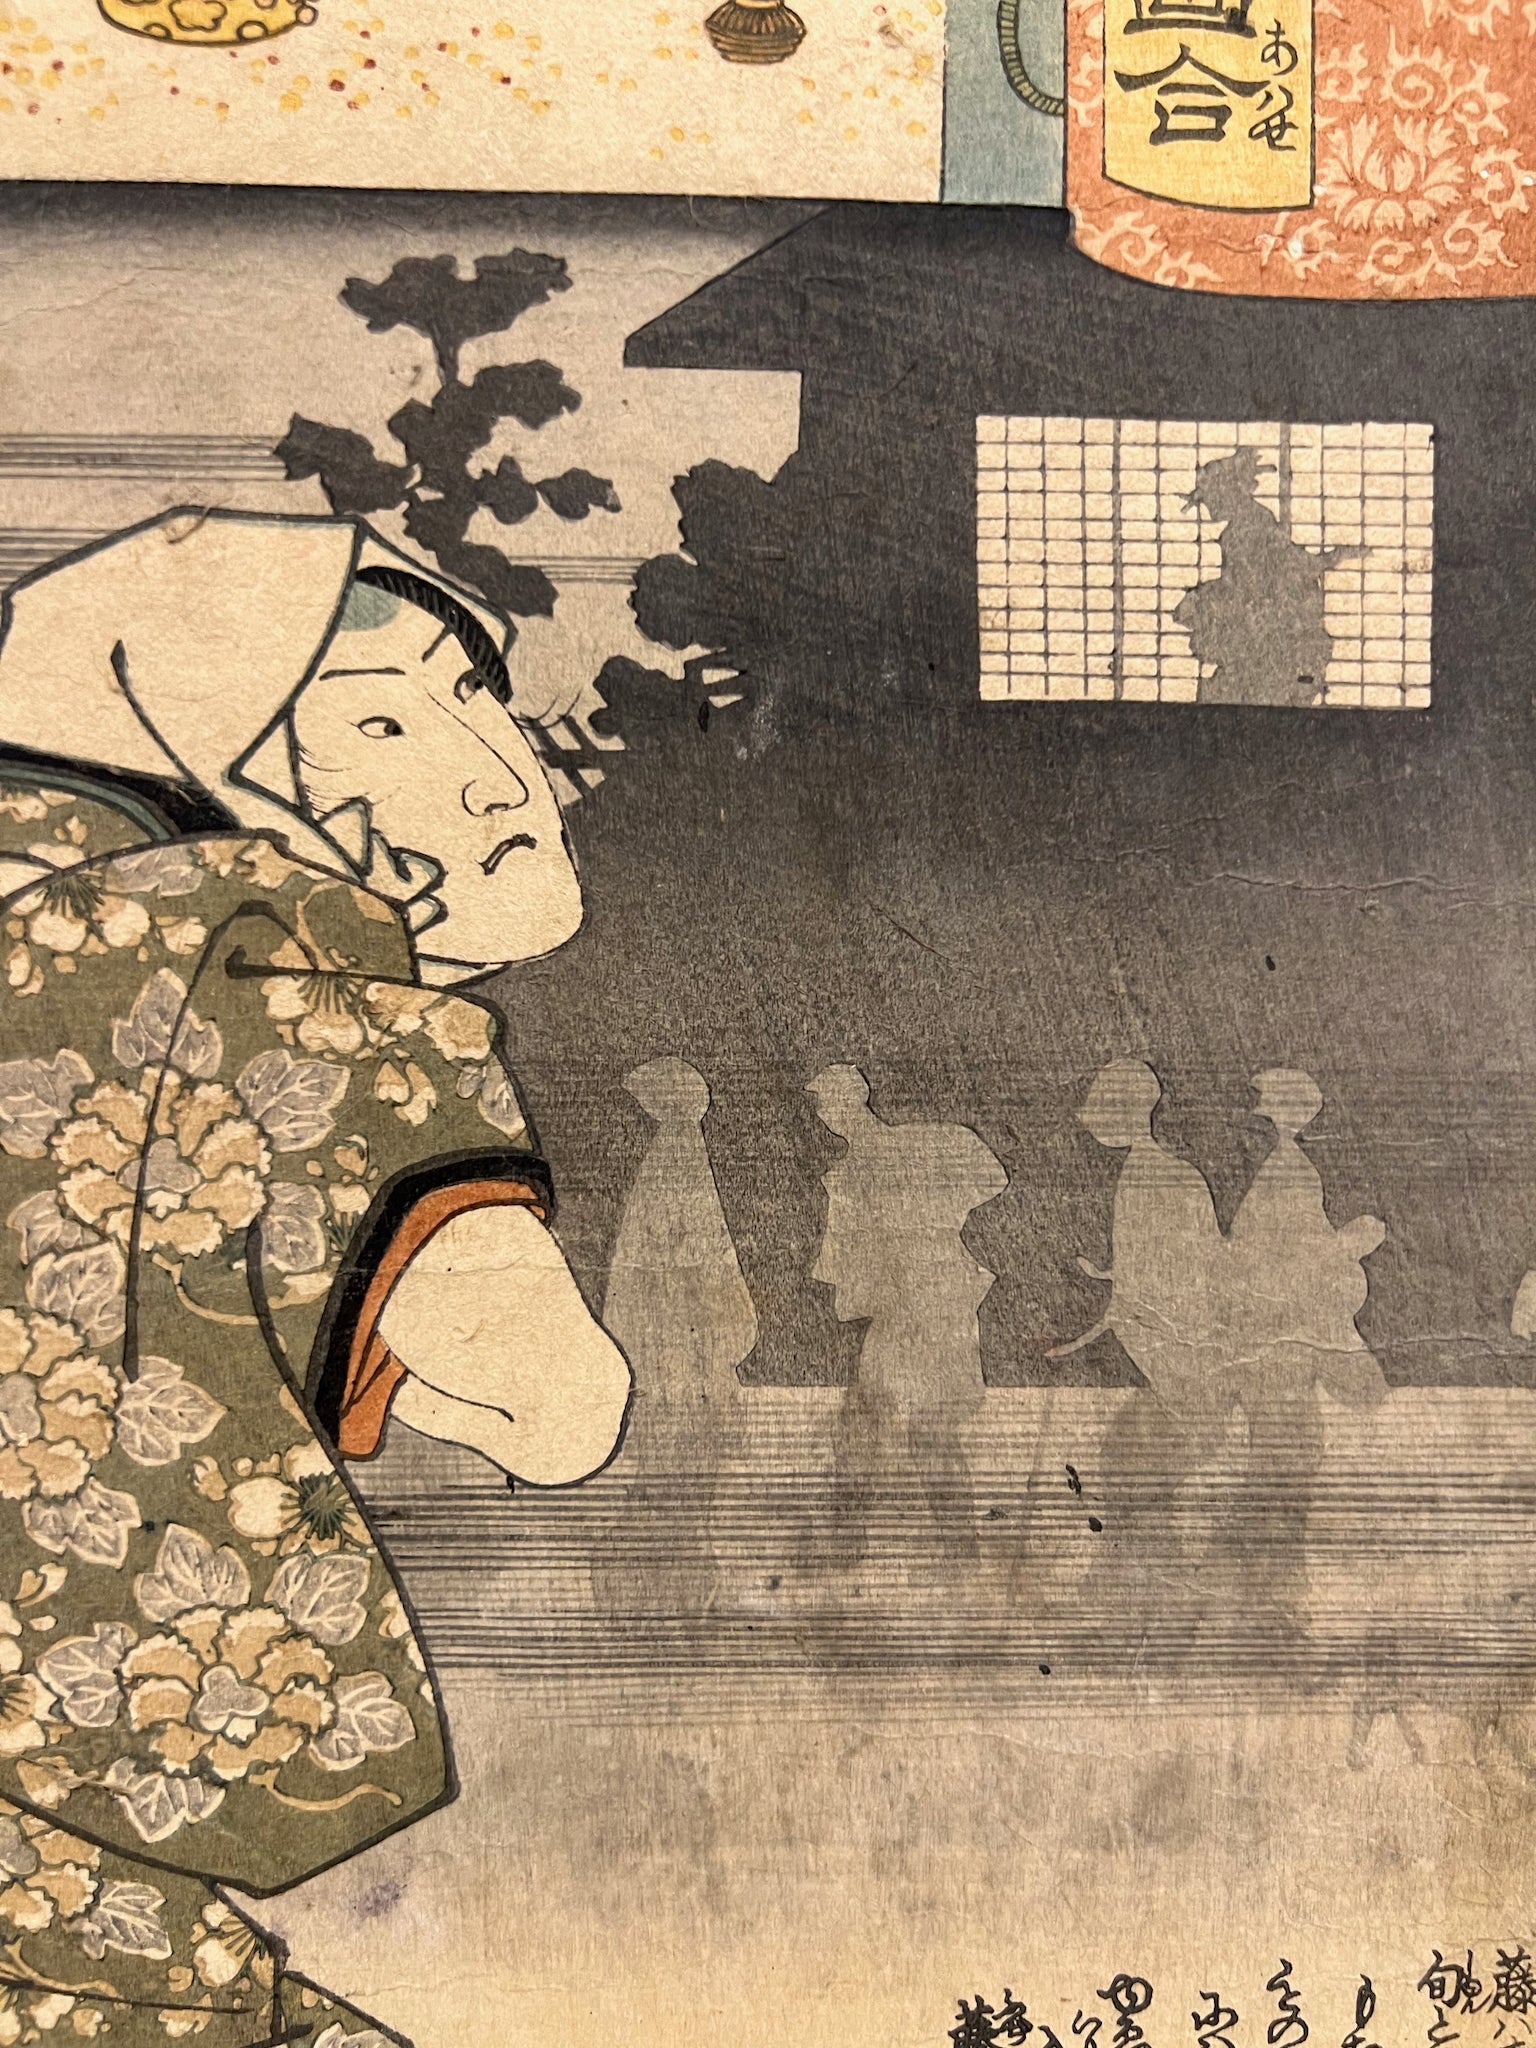 L'anatomie du corps humain en Kabuki dans des estampes japonaises – La  boite verte